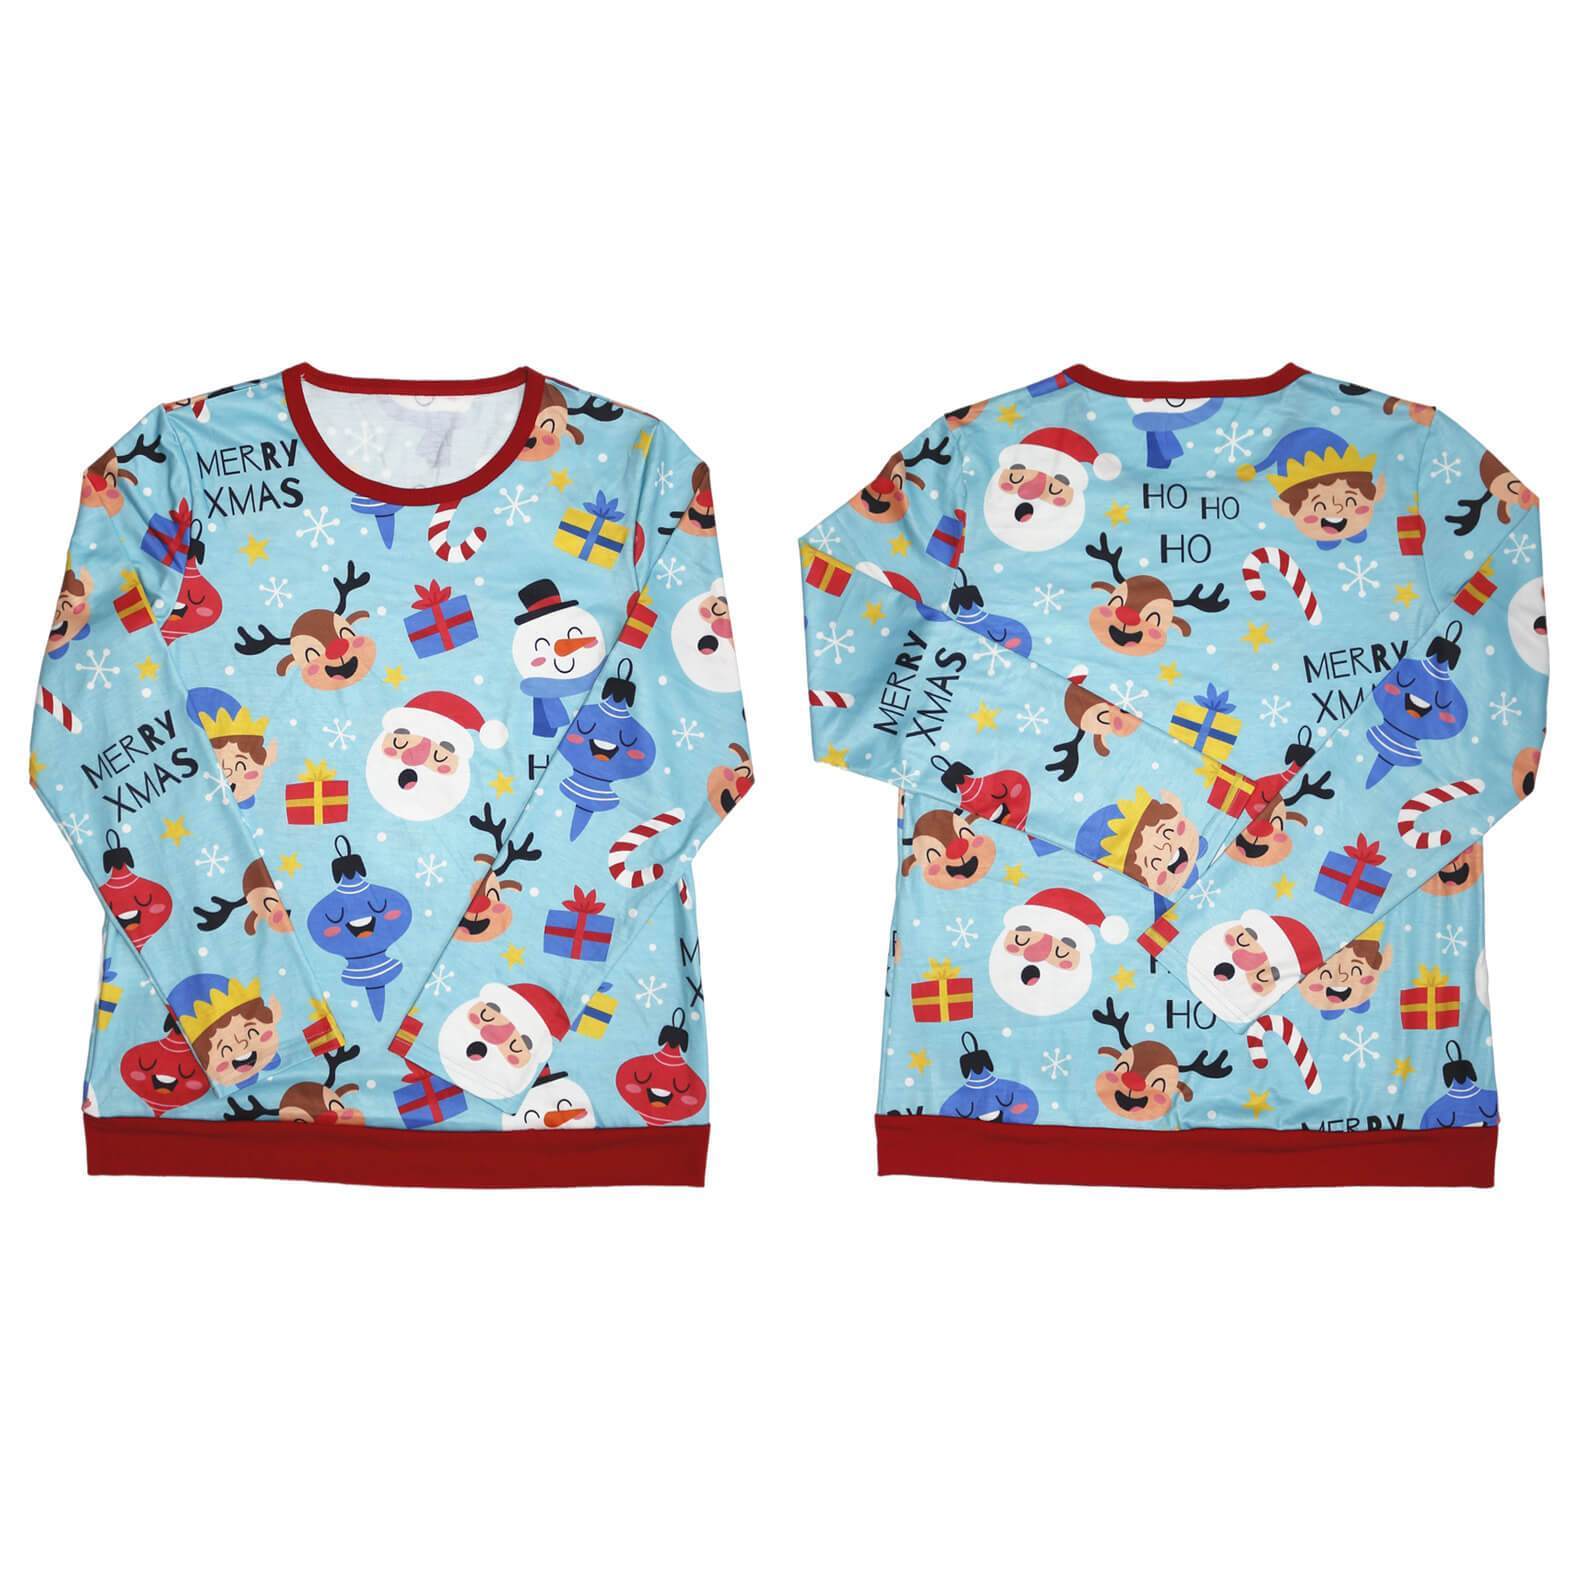 Santa and Reindeer Print Christmas Family Matching Pajamas Sets With Dog